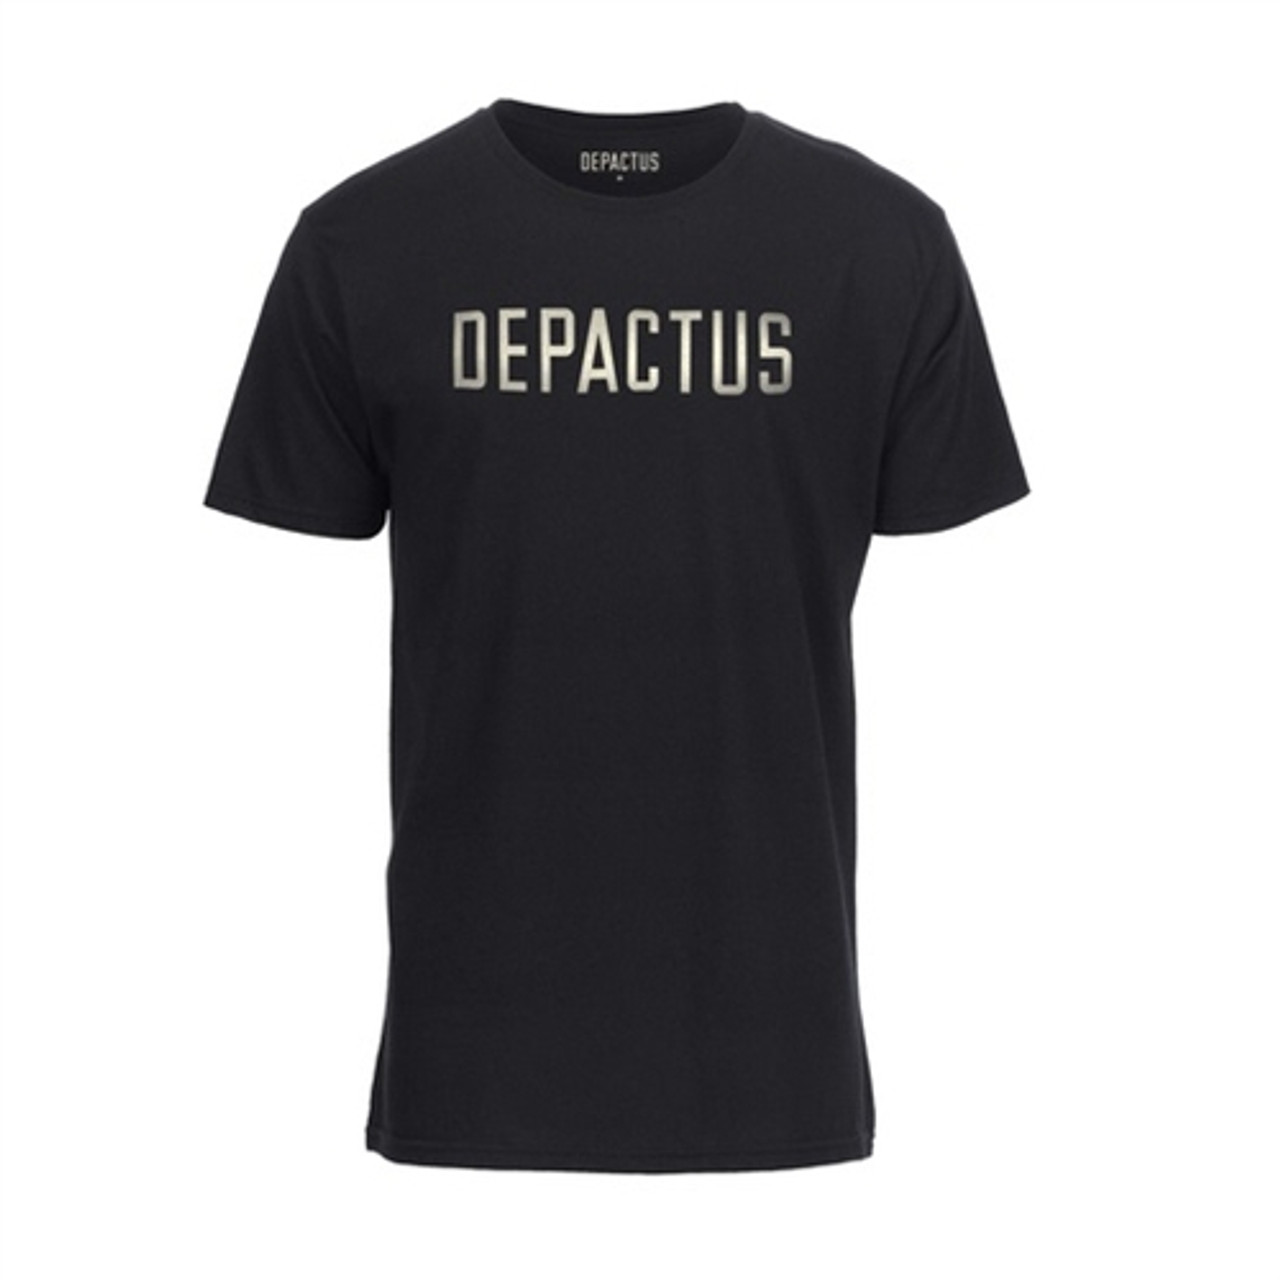 Depactus Wordmark Tshirt Black